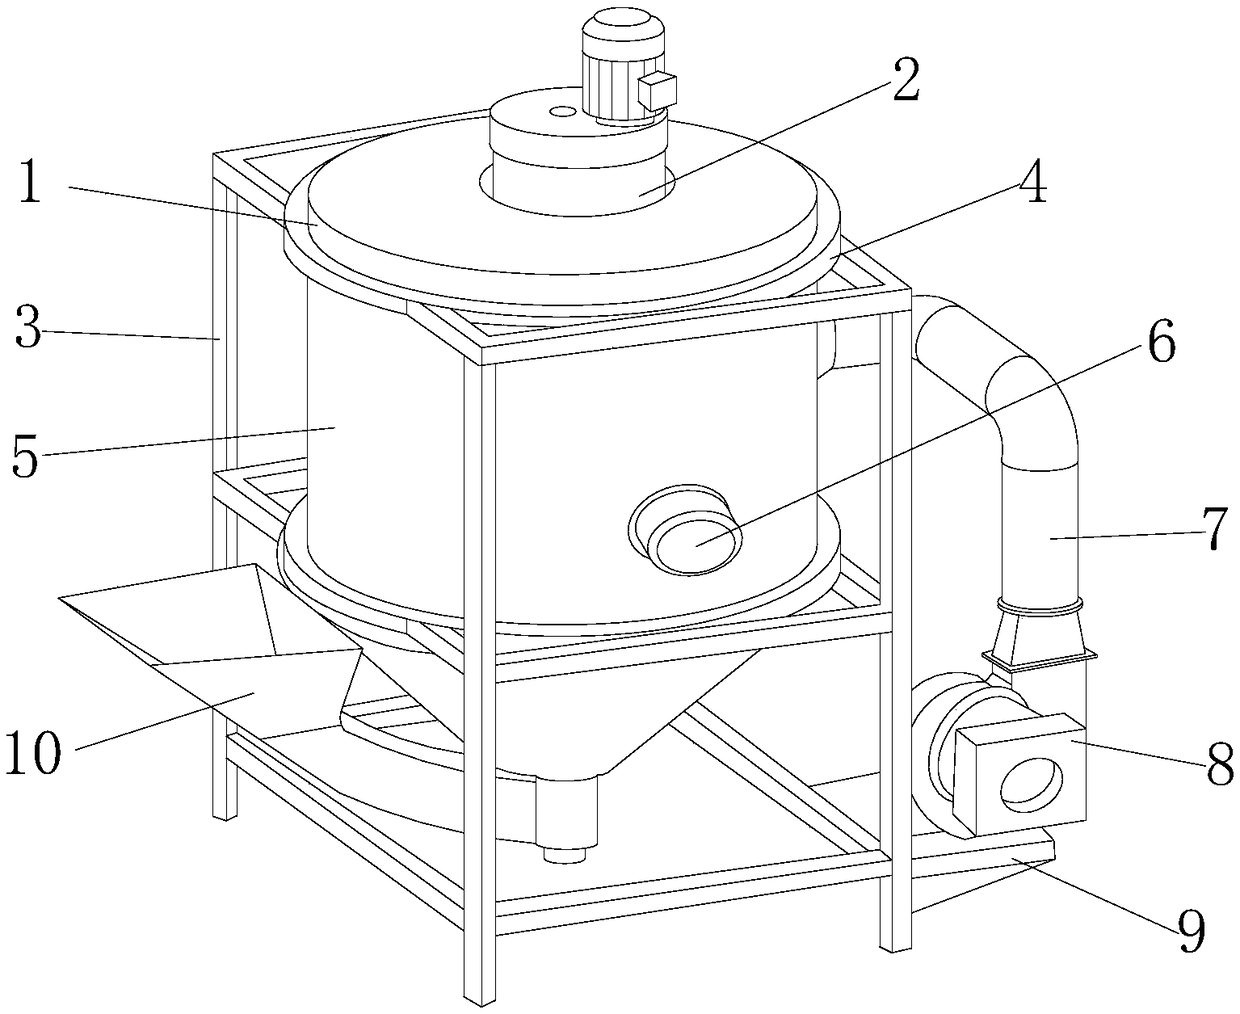 Boiler tea leaf dryer